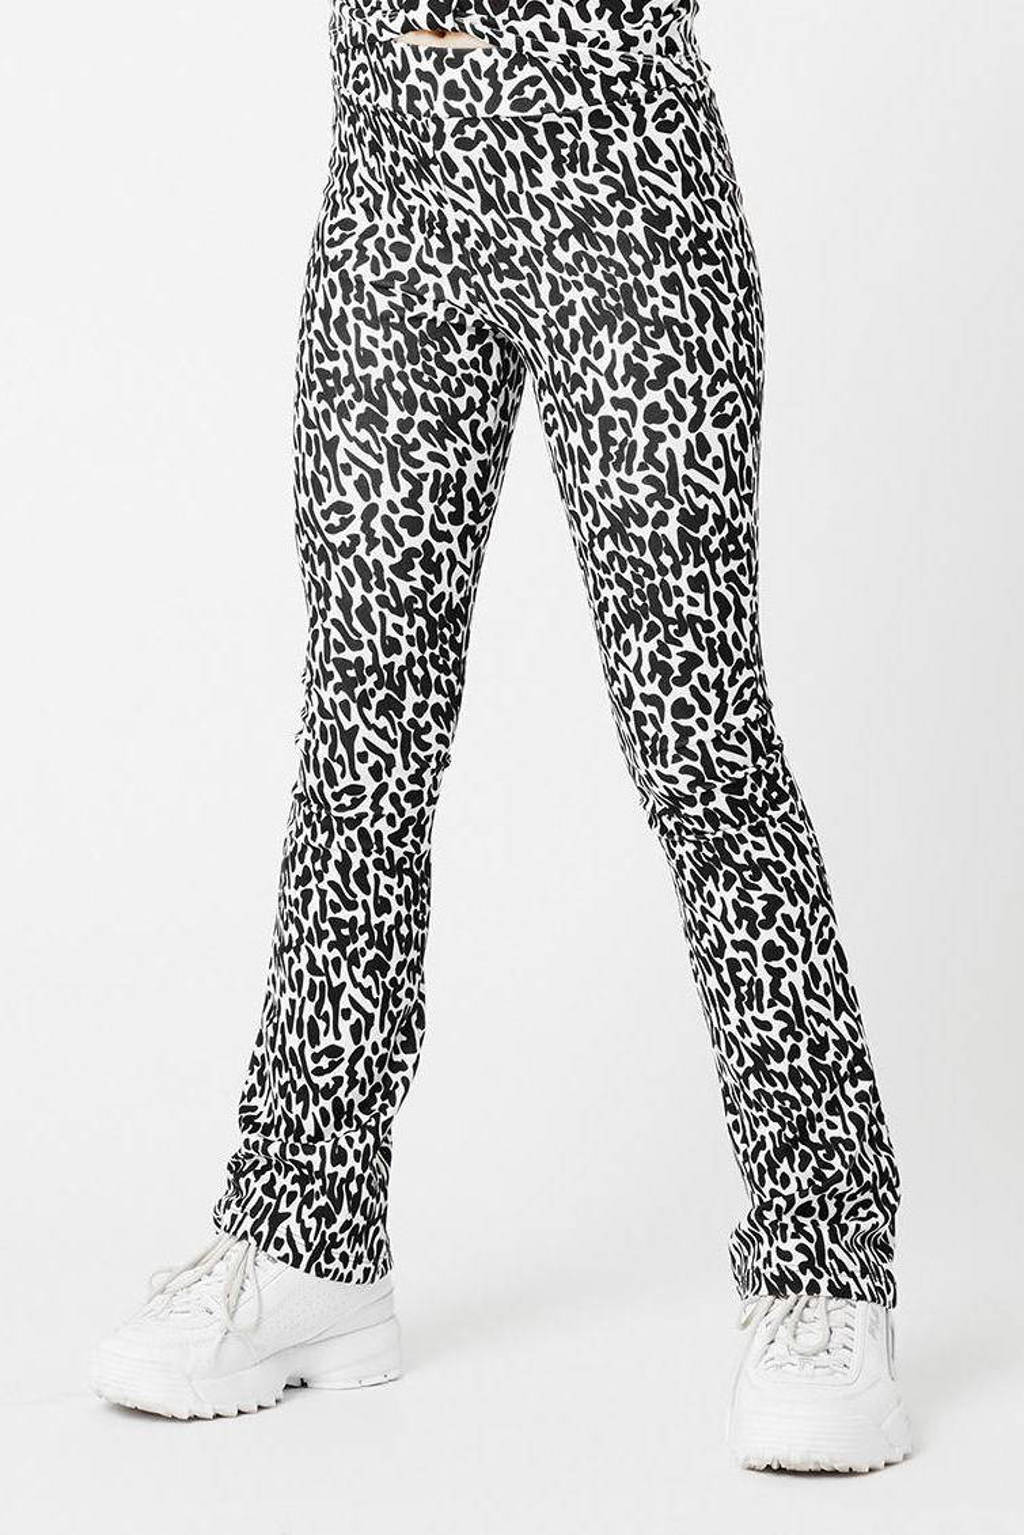 CoolCat Junior flared broek Philou  met all over print wit/zwart 34 inch, Wit/zwart